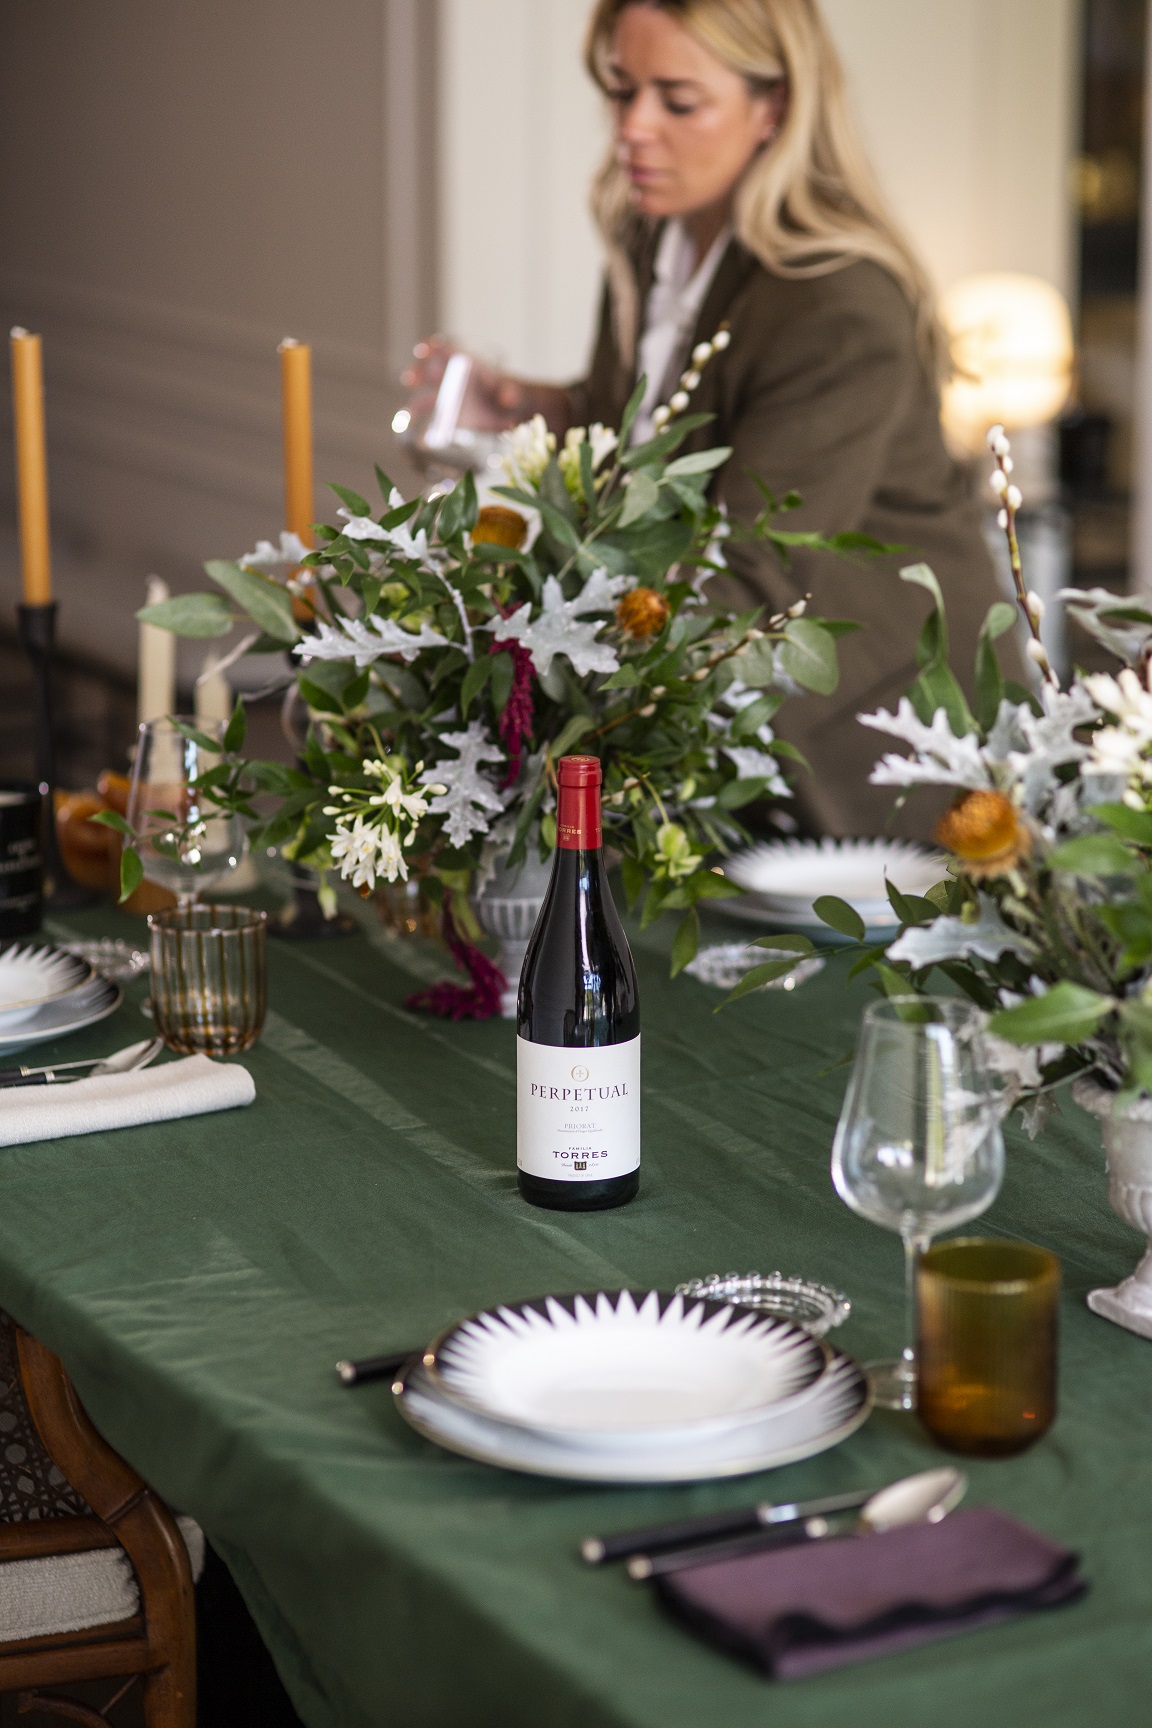 La estilista @goutdhestia poniendo la mesa de navidad, en concreto una de las copas de vino. 